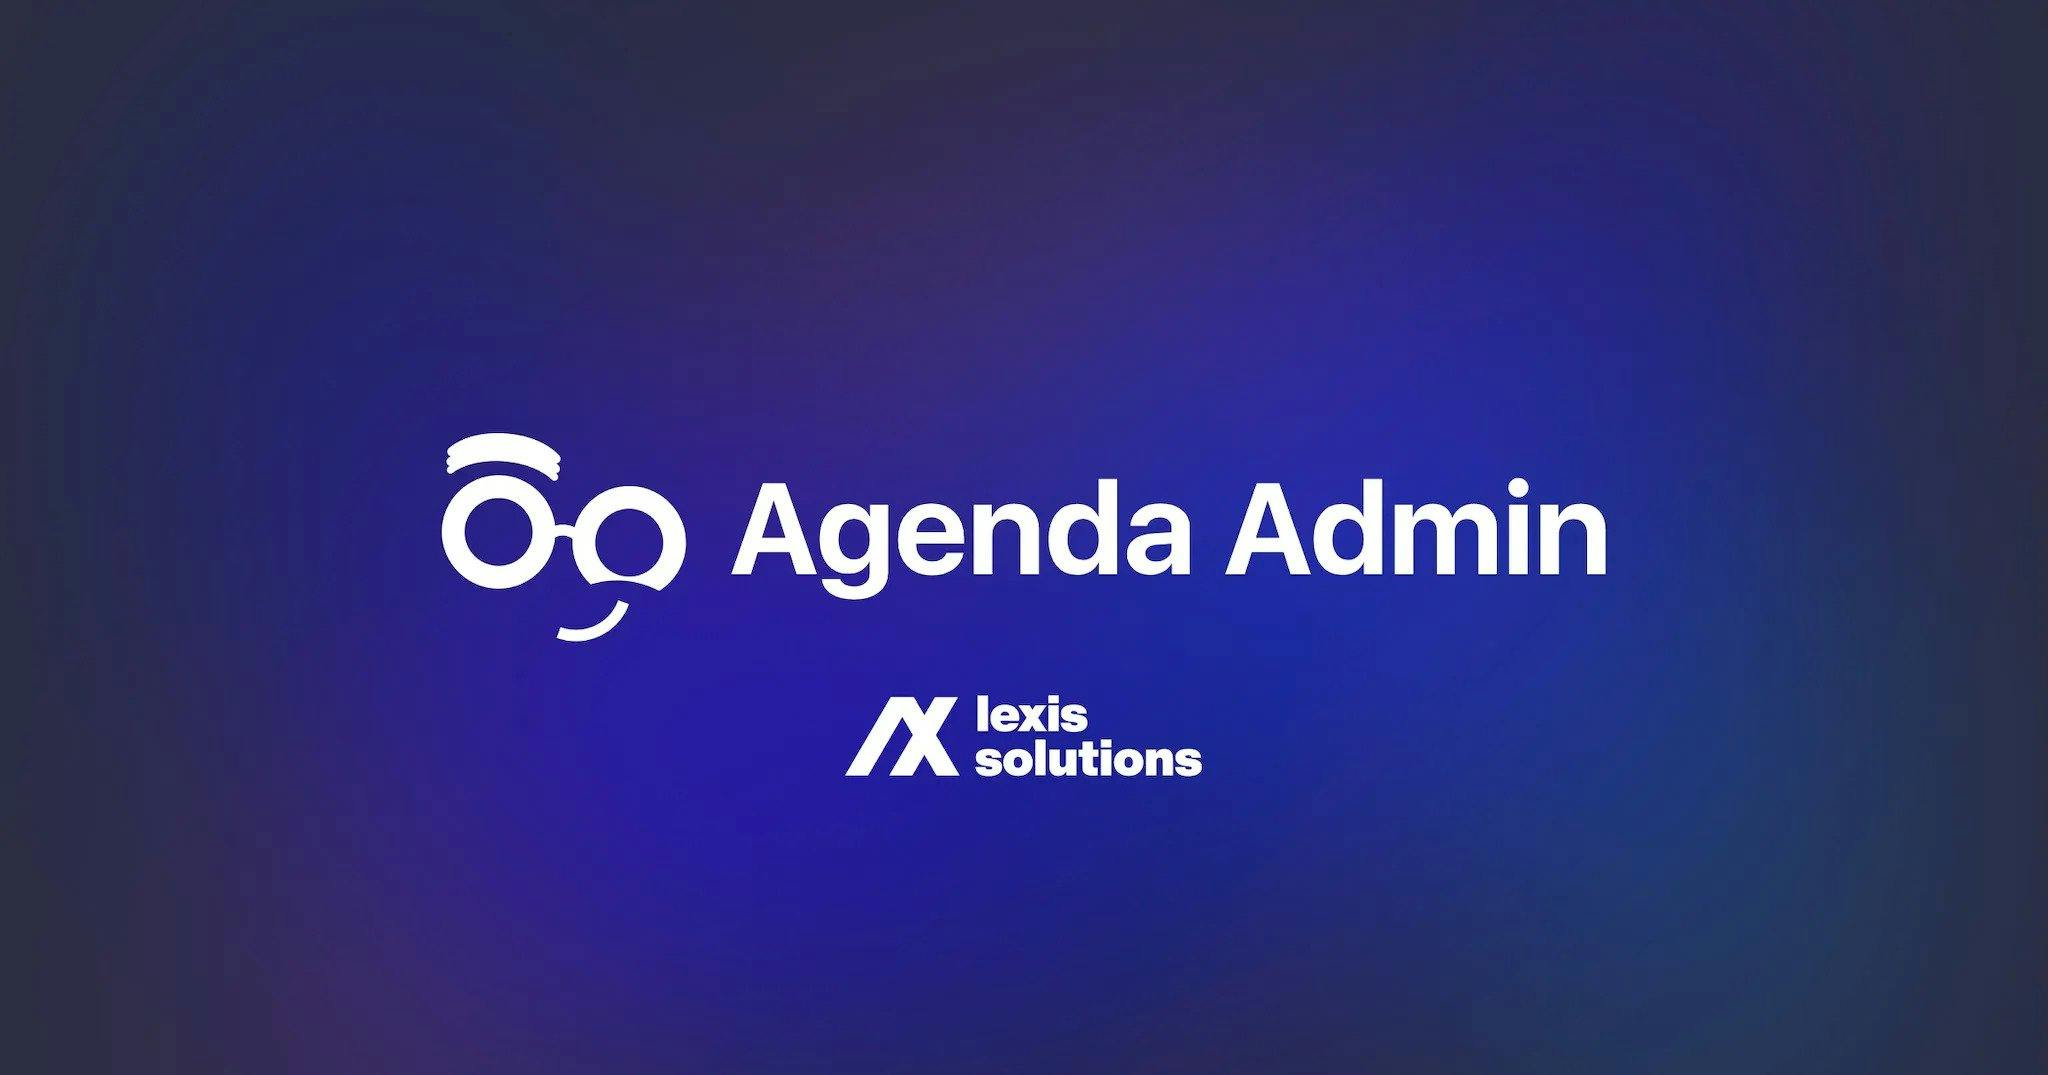 Agenda Admin Cover